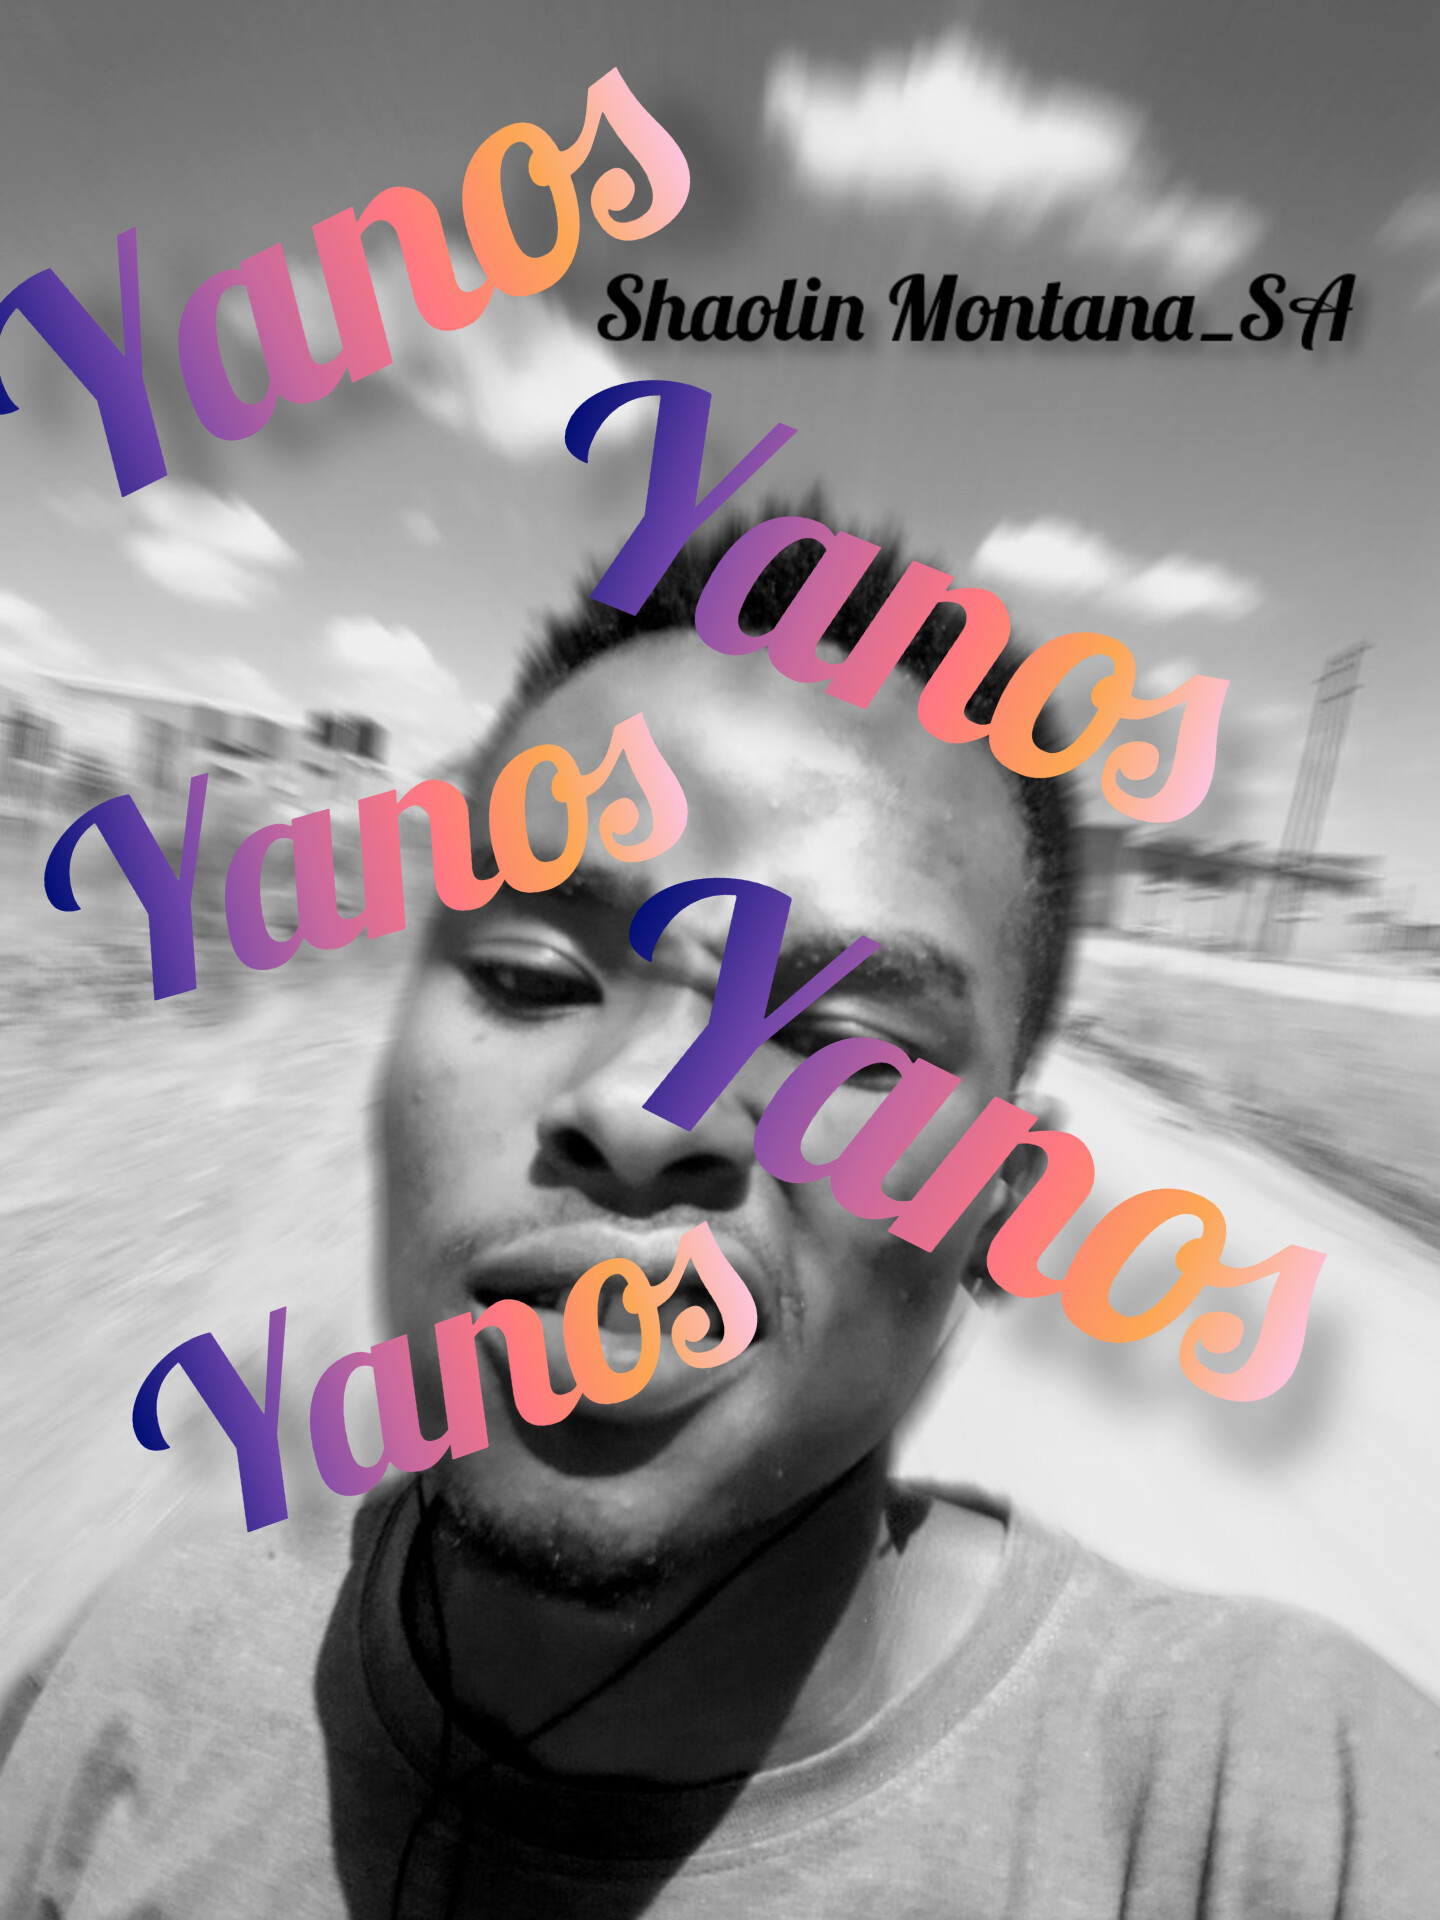 YANOS - Shaolin Montana_SA